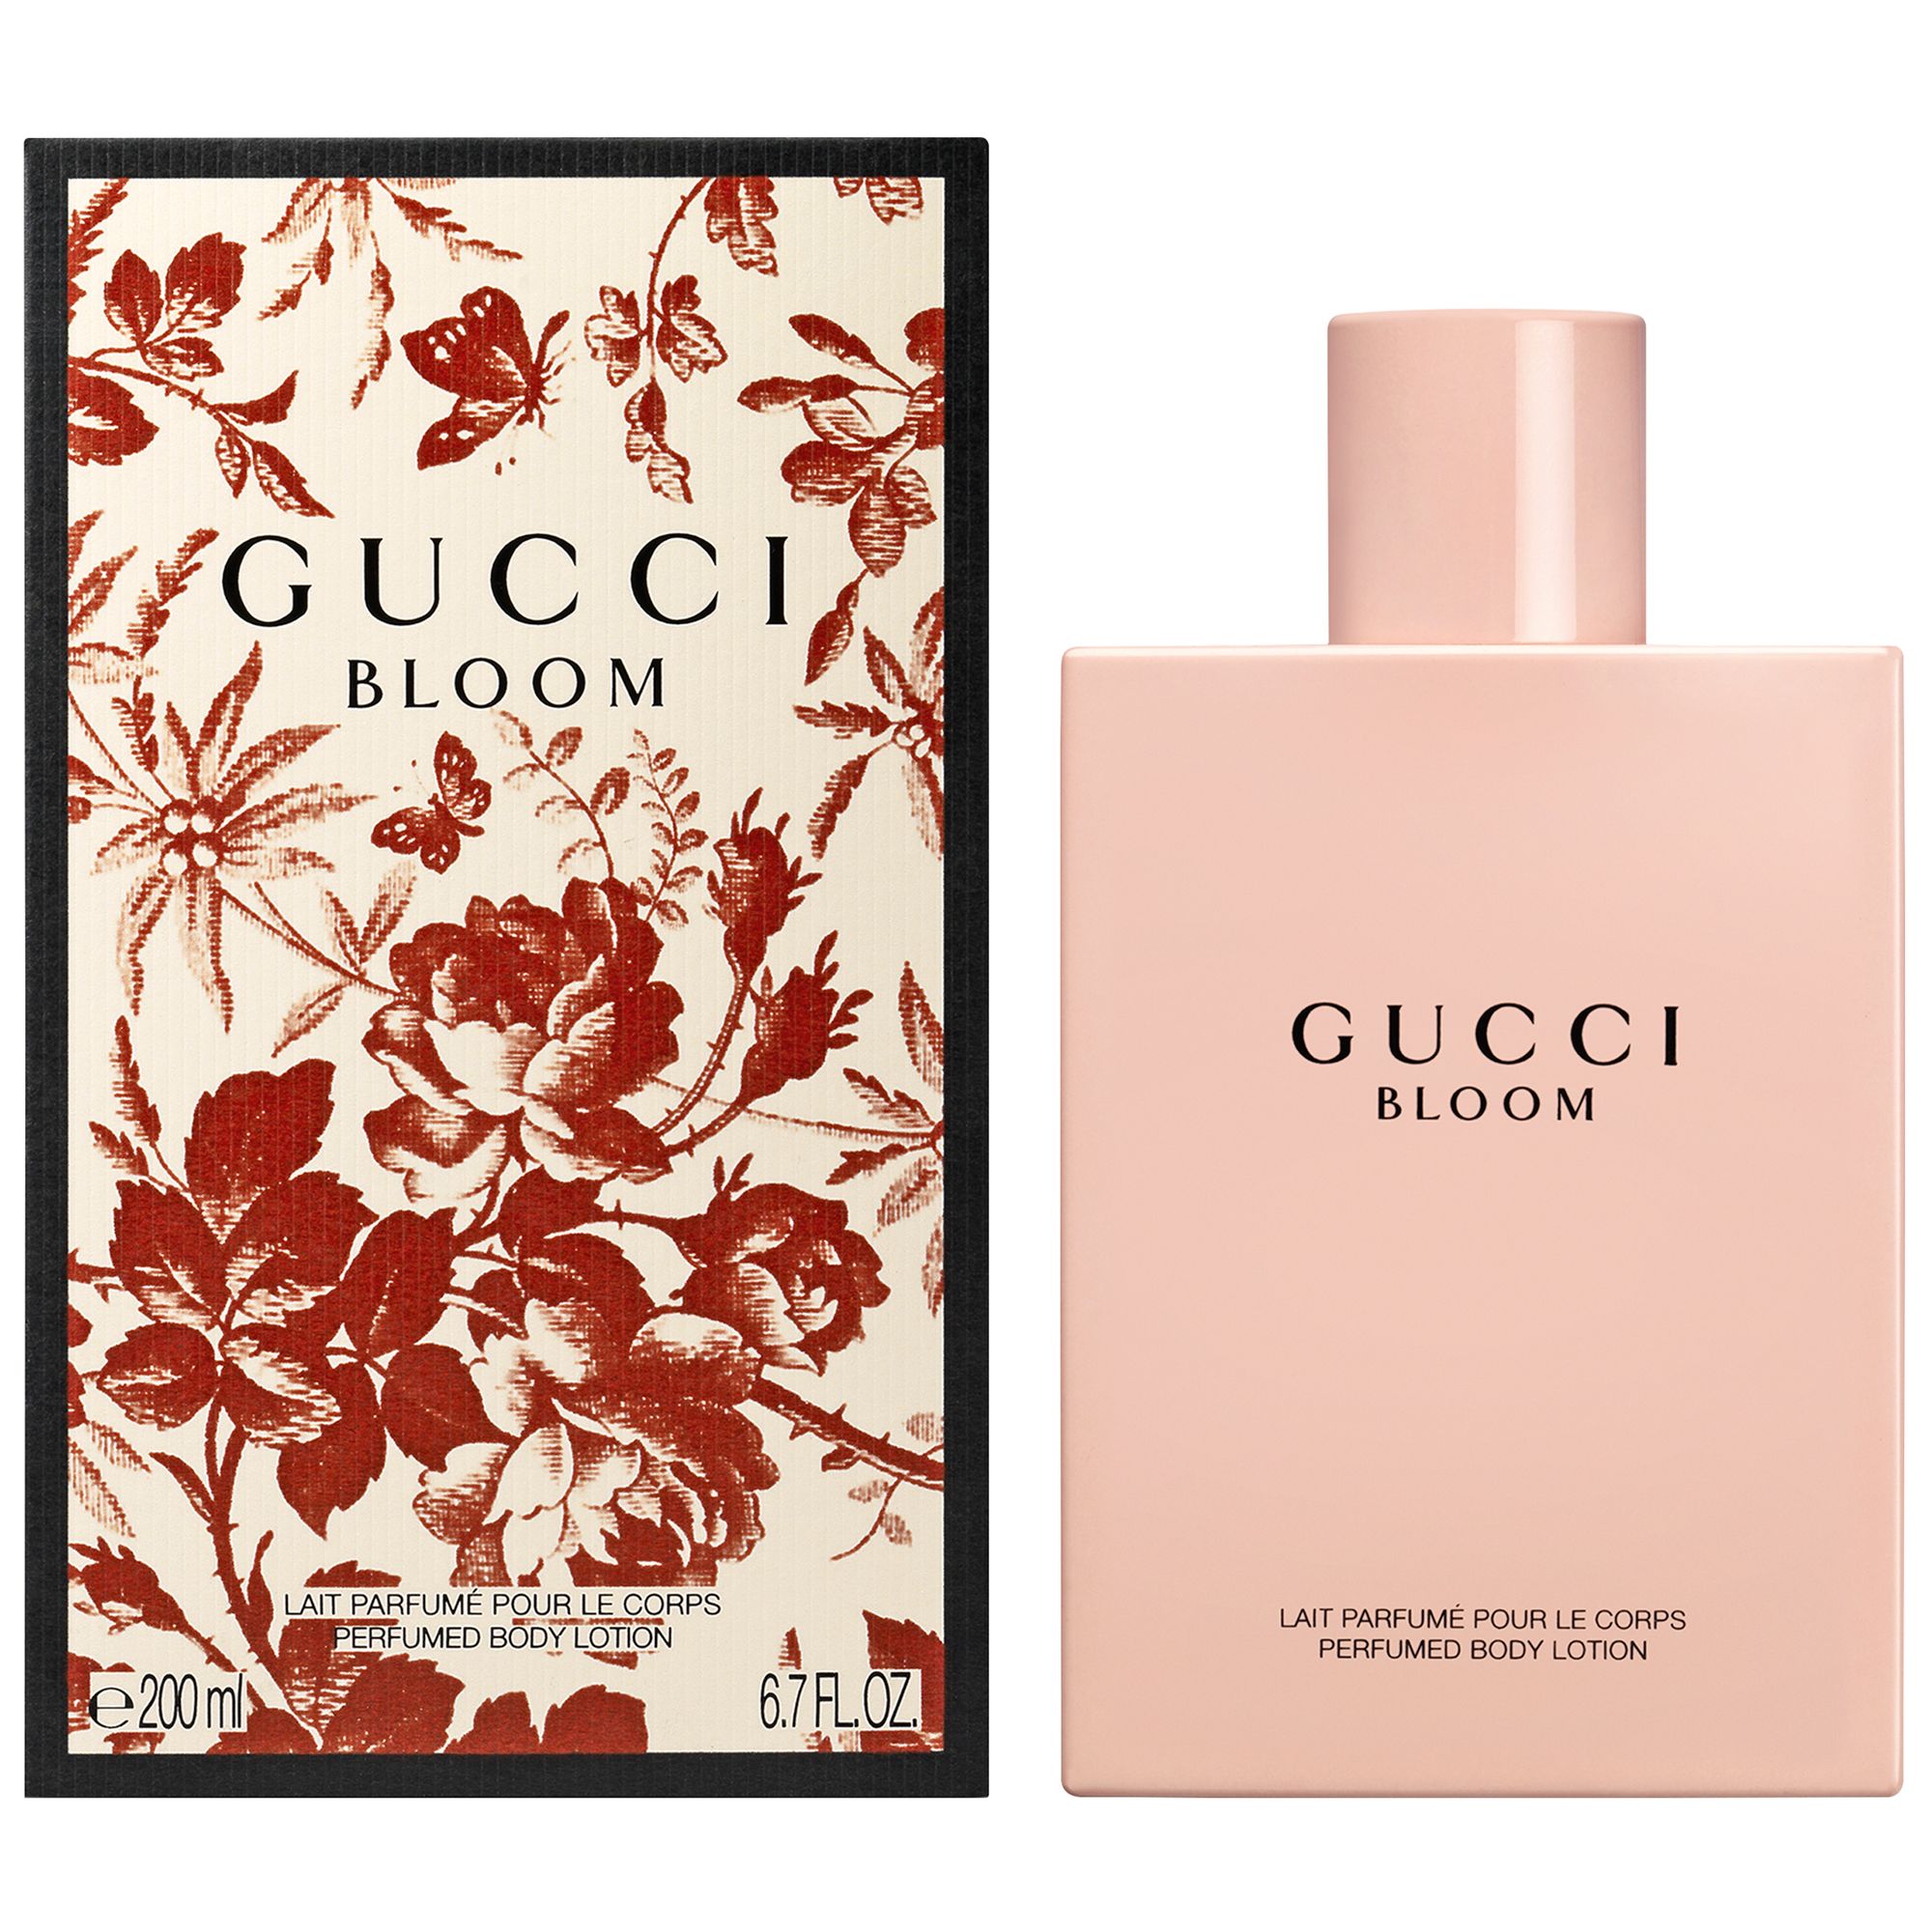 Gucci Bloom Eau de Parfum Body Lotion 